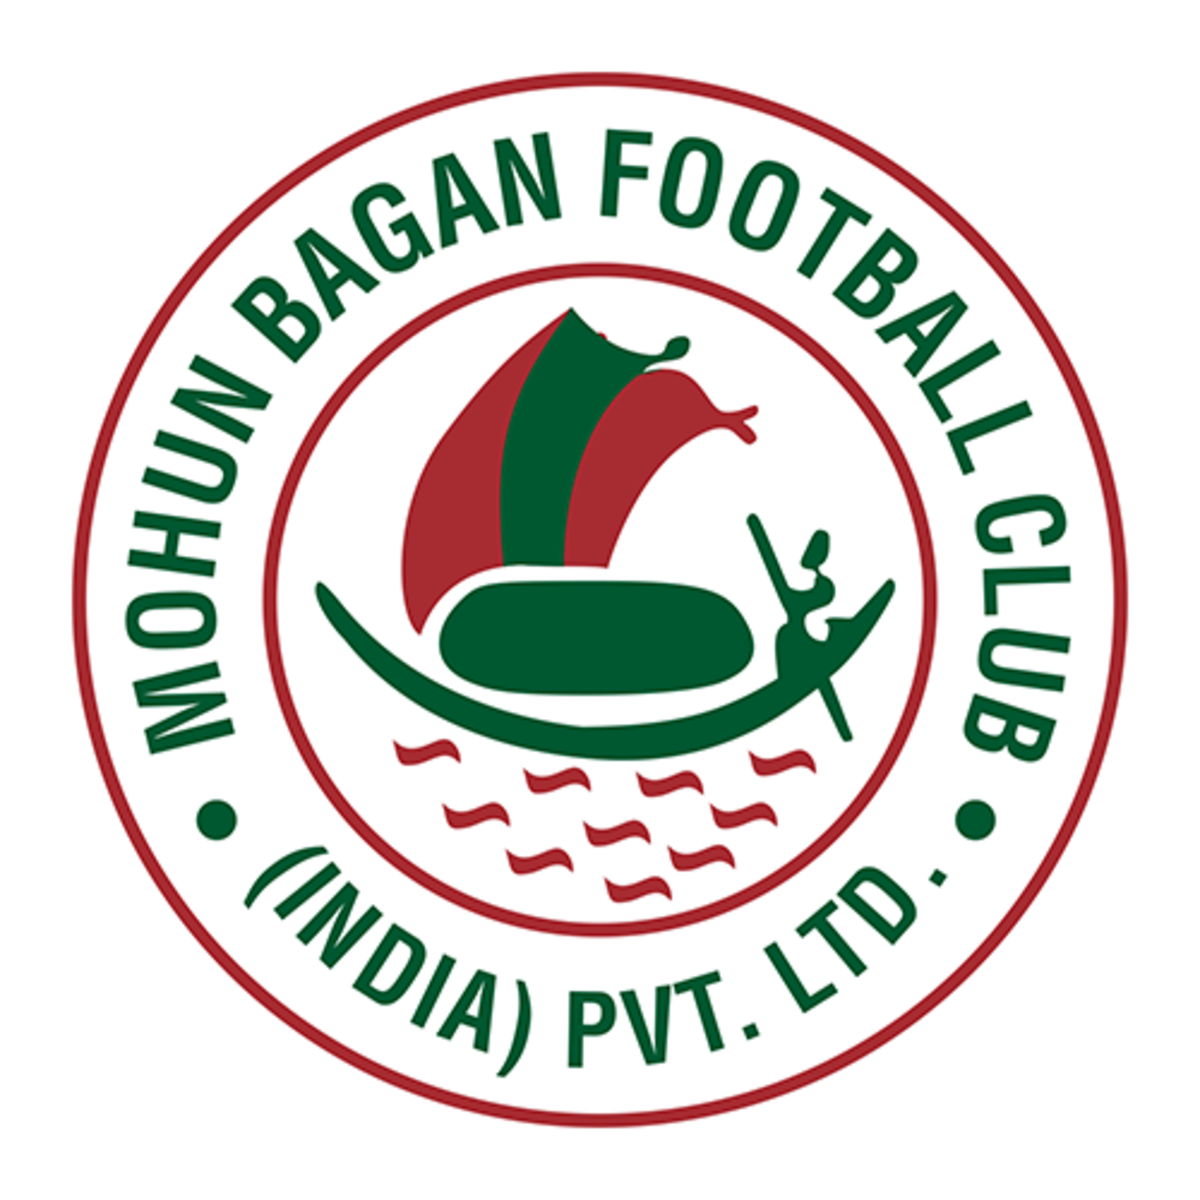 Câu lạc bộ thể thao Mohun Bagan tham gia Indian Super League.